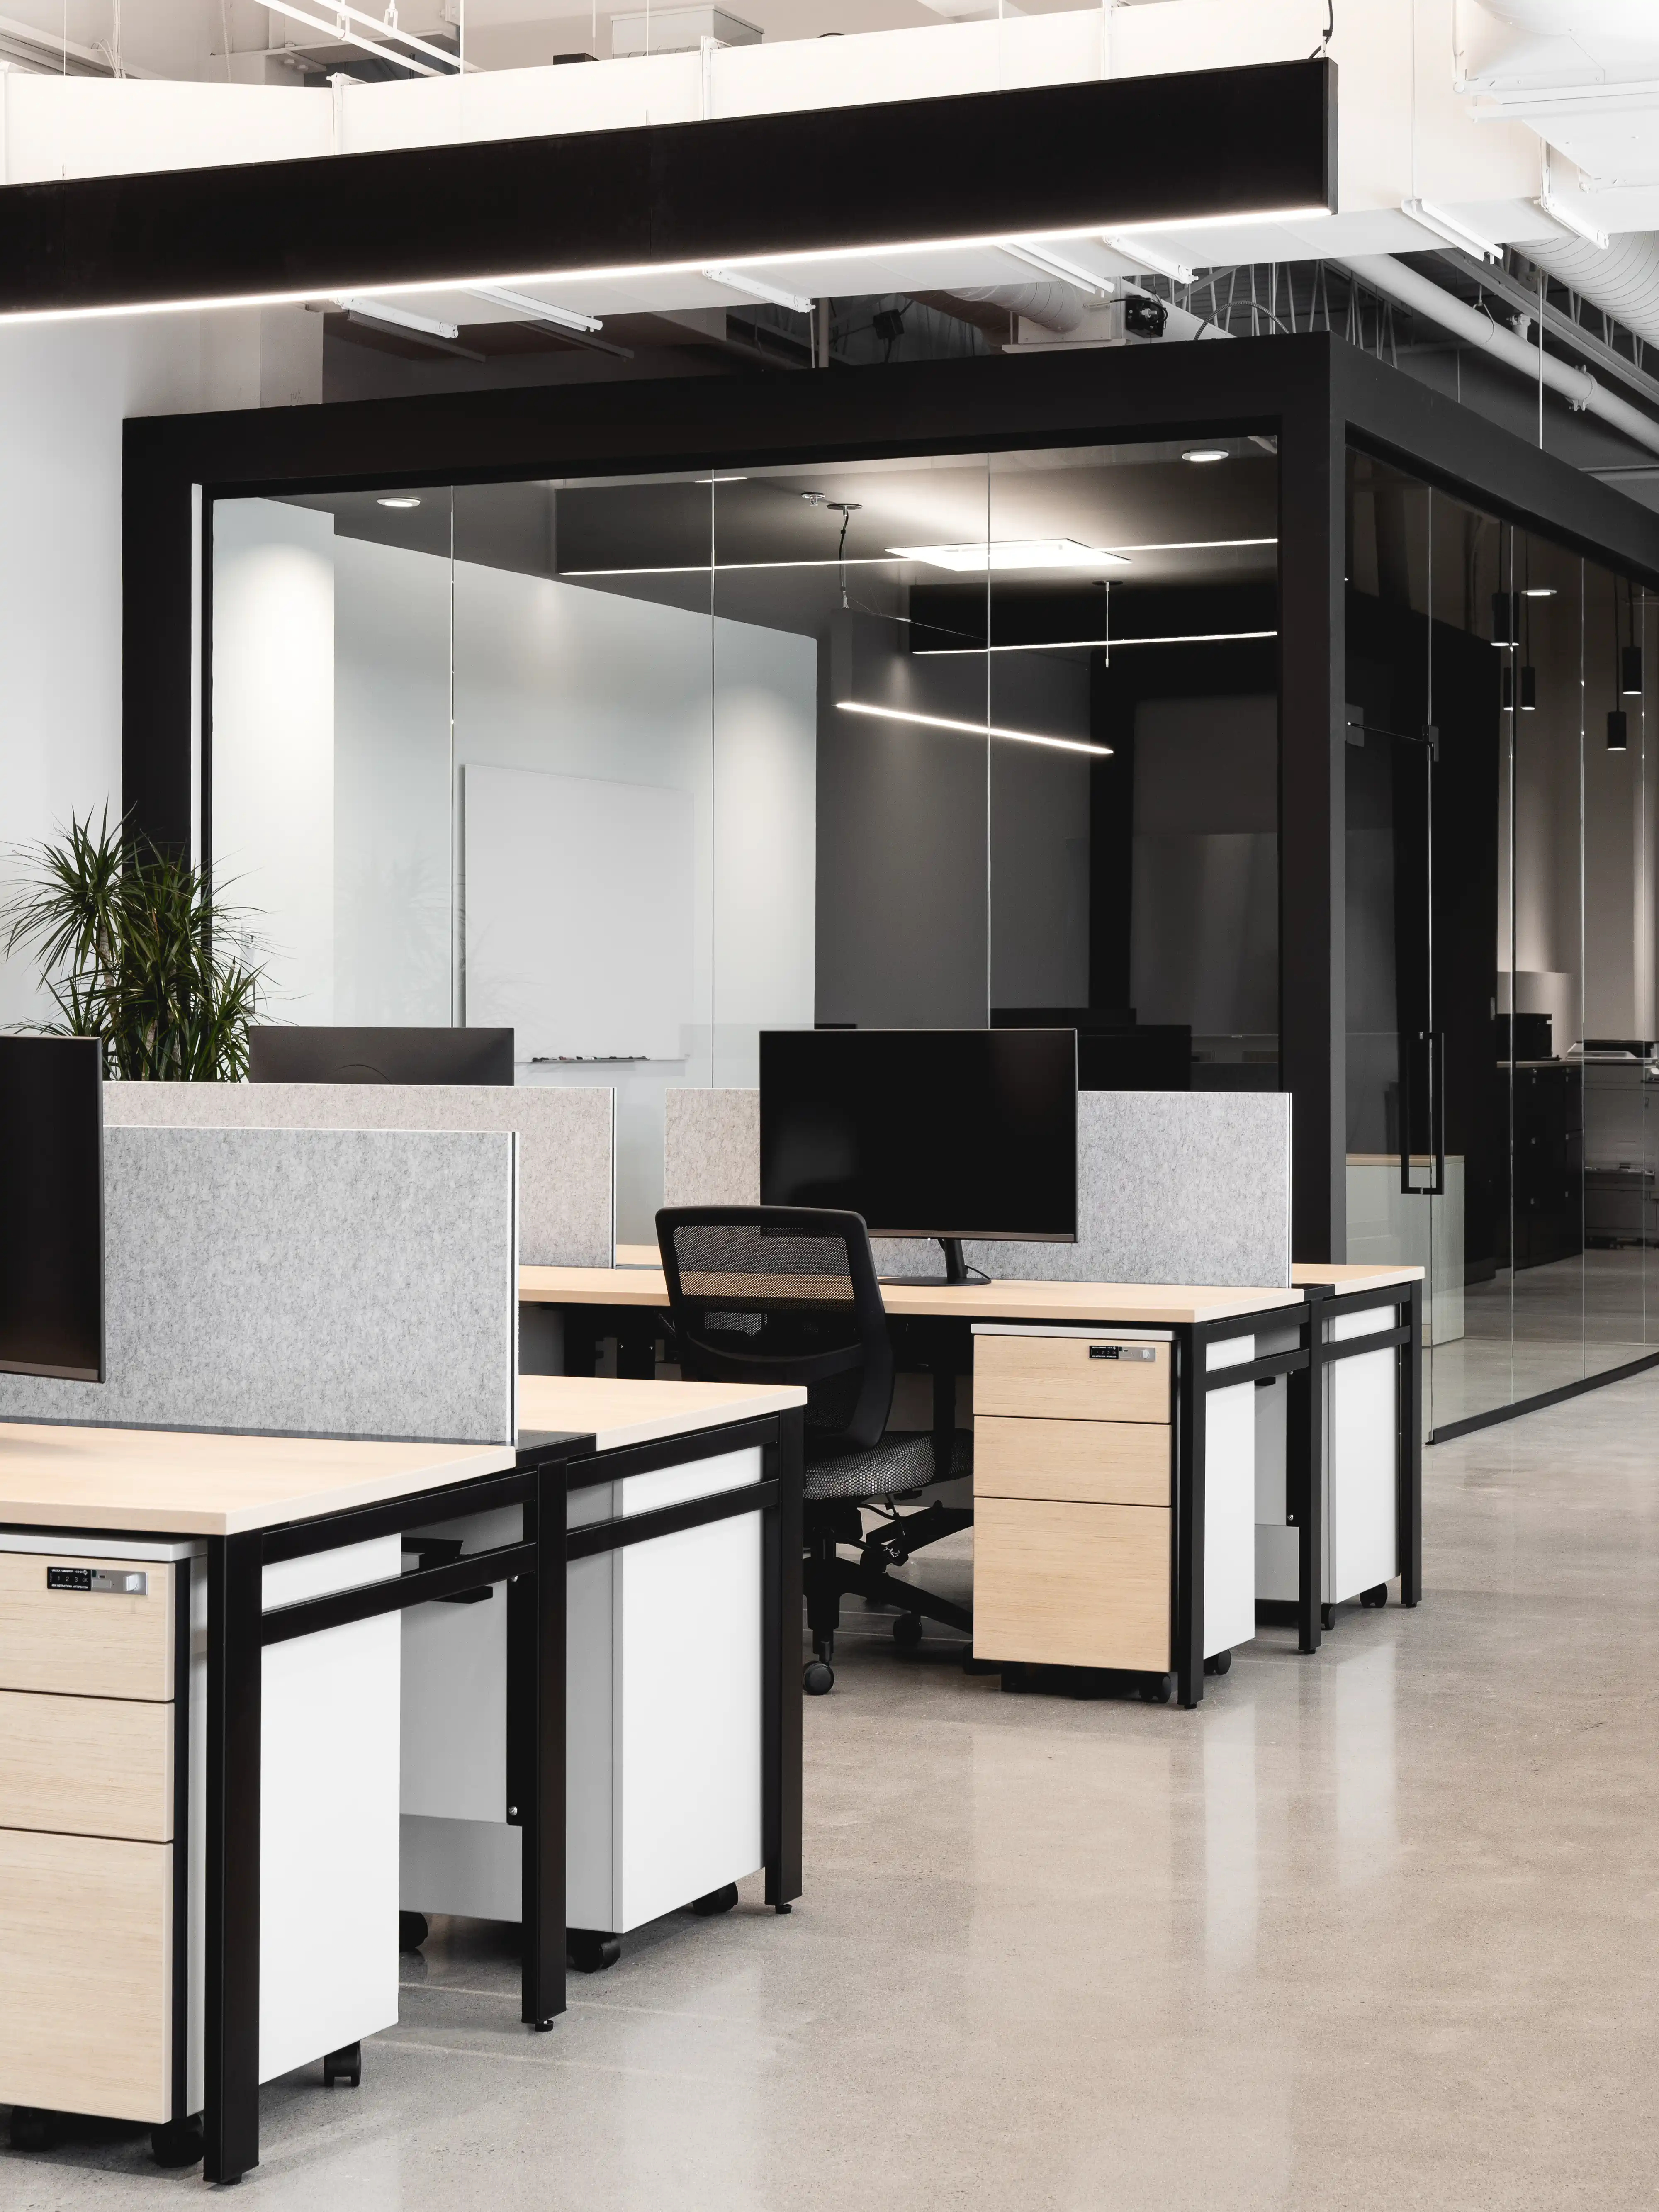 Un espace de bureau moderne avec un plan ouvert et des rangées de bureaux et de chaises, intérieur signé Sarah Brown Design